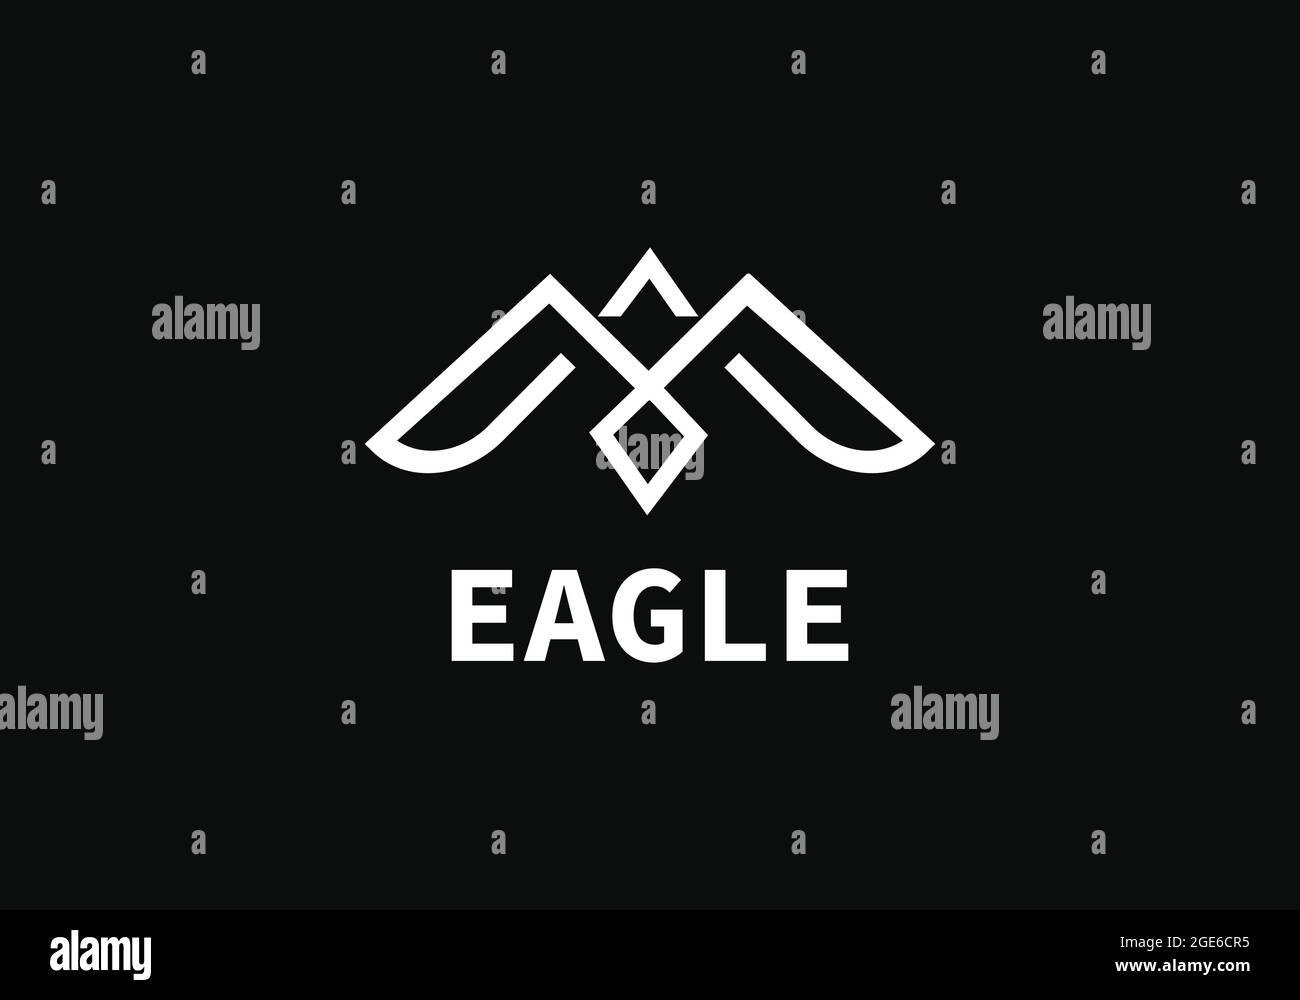 Minimal eagle logo vector design template Stock Vector